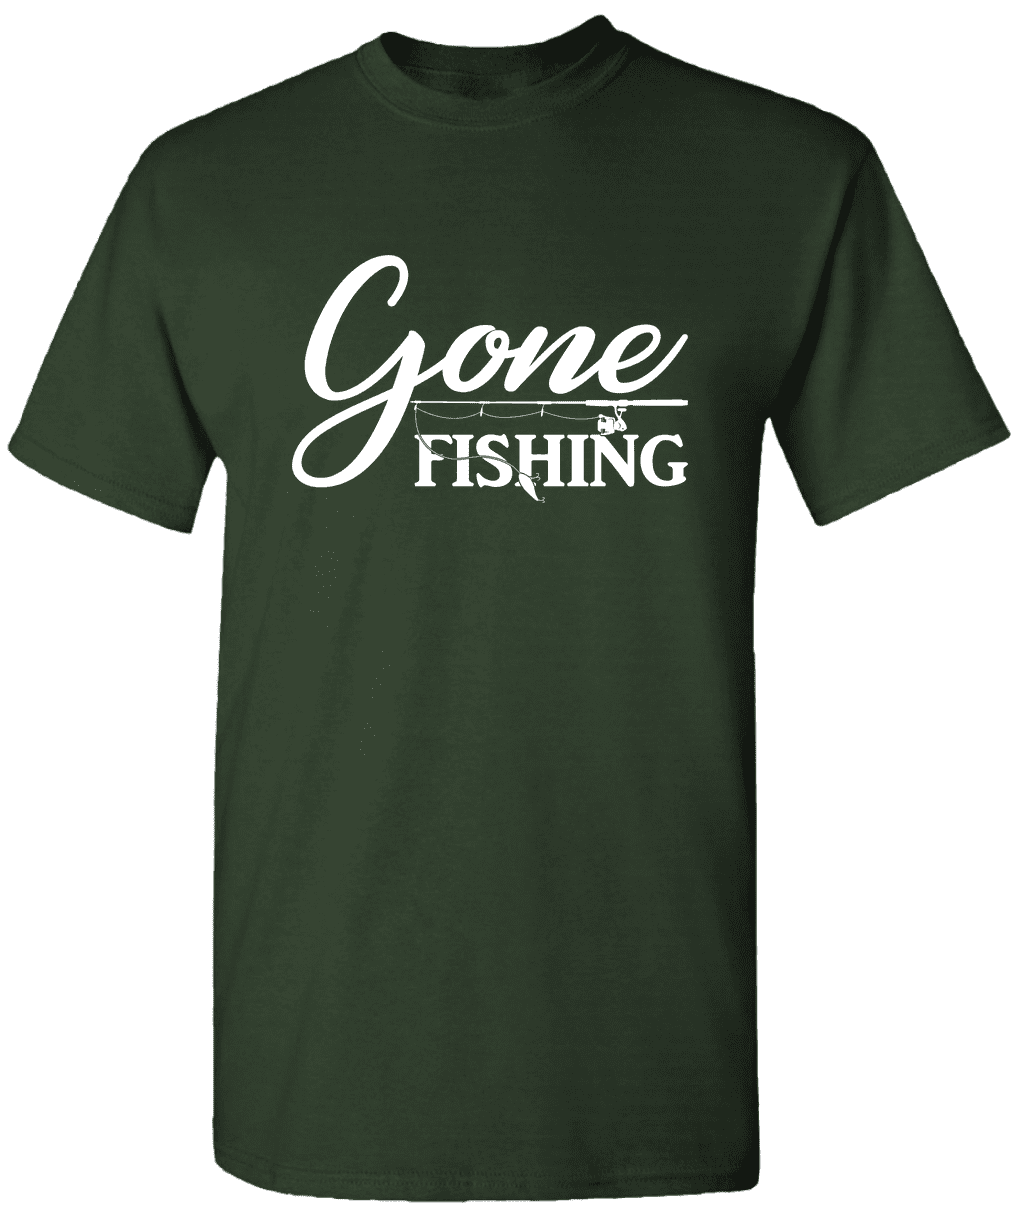 Gone Fishing - Novelty Fishing Shirt Fishing T-Shirt